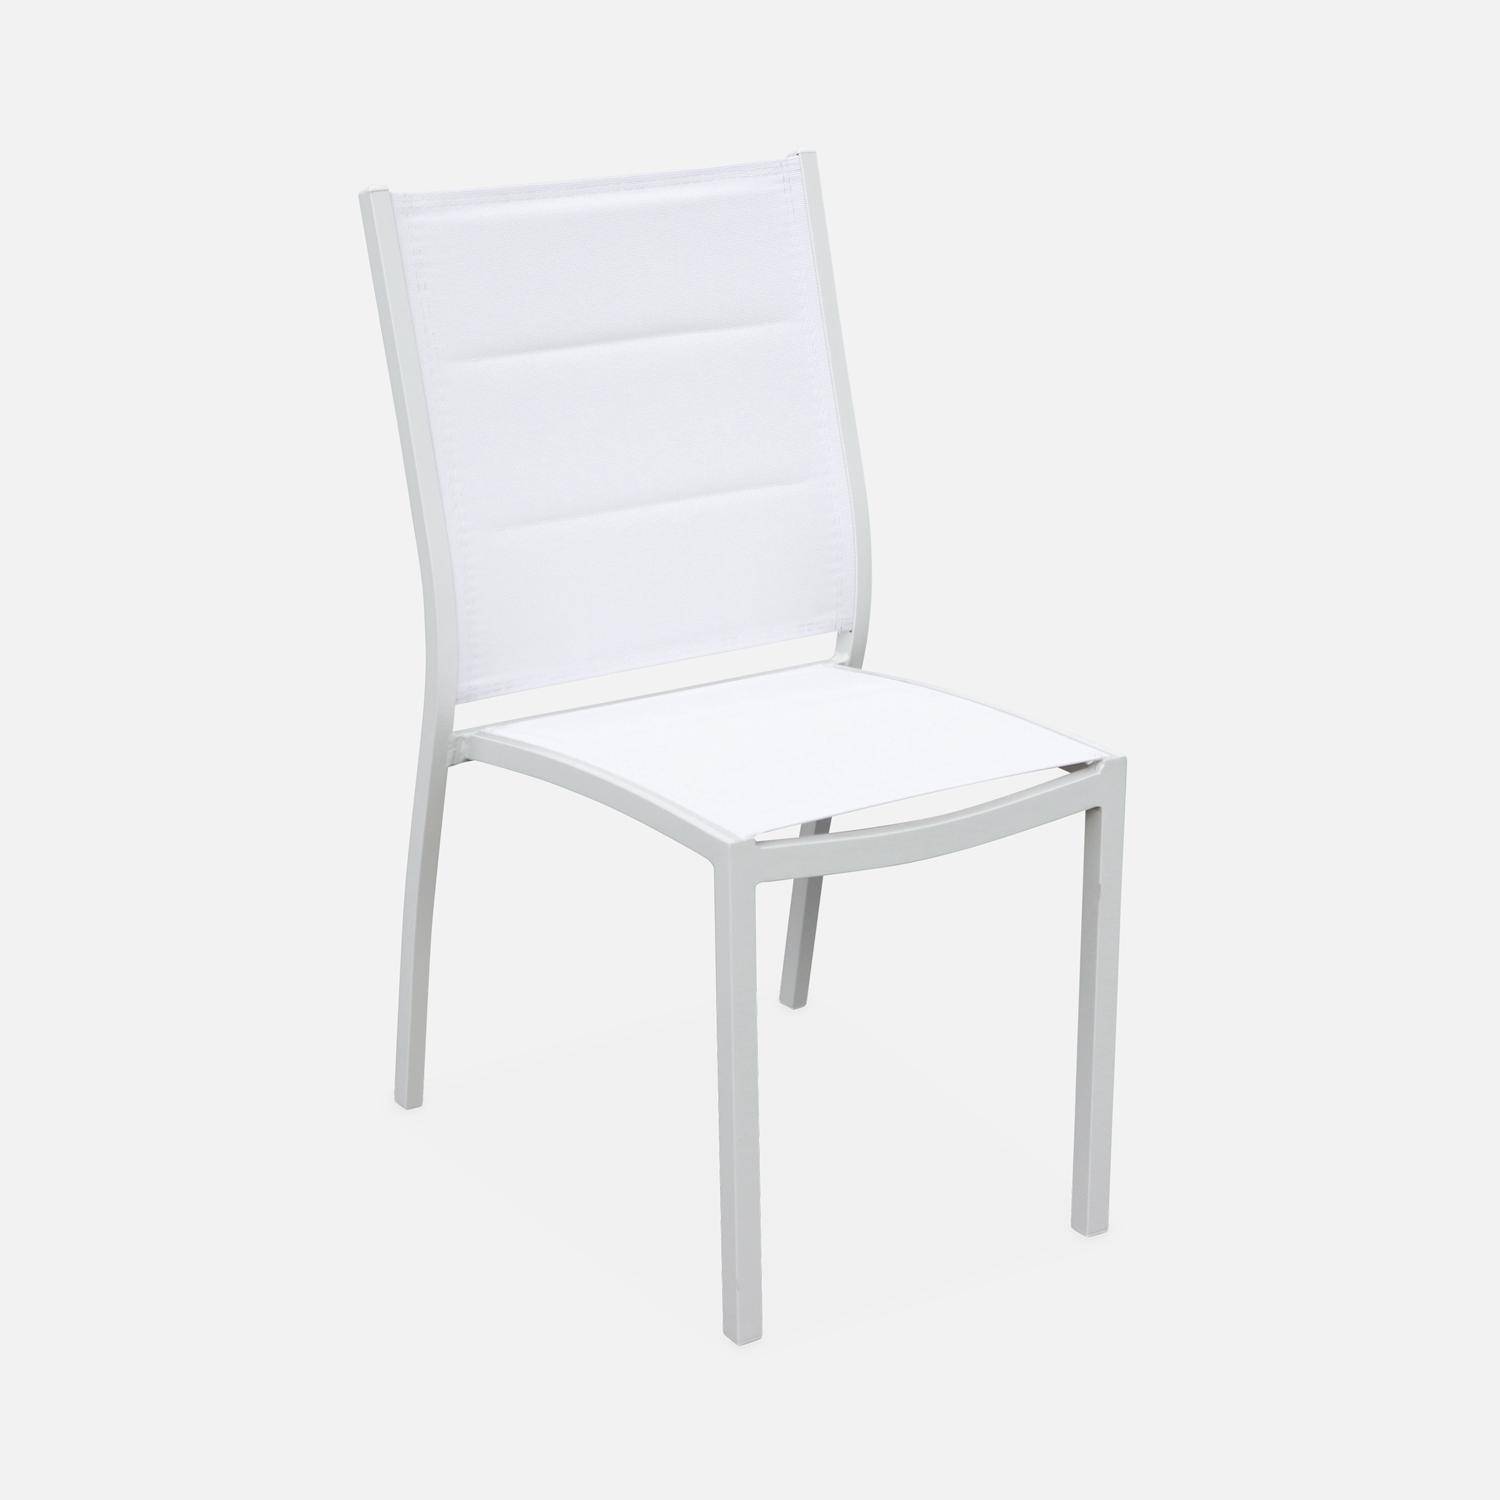 Set da giardino - modello: Chicago, colore: Bianco - Tavolo allungabile in alluminio, dimensioni: 175/245cm con prolunga e 8 sedute in textilene Photo7